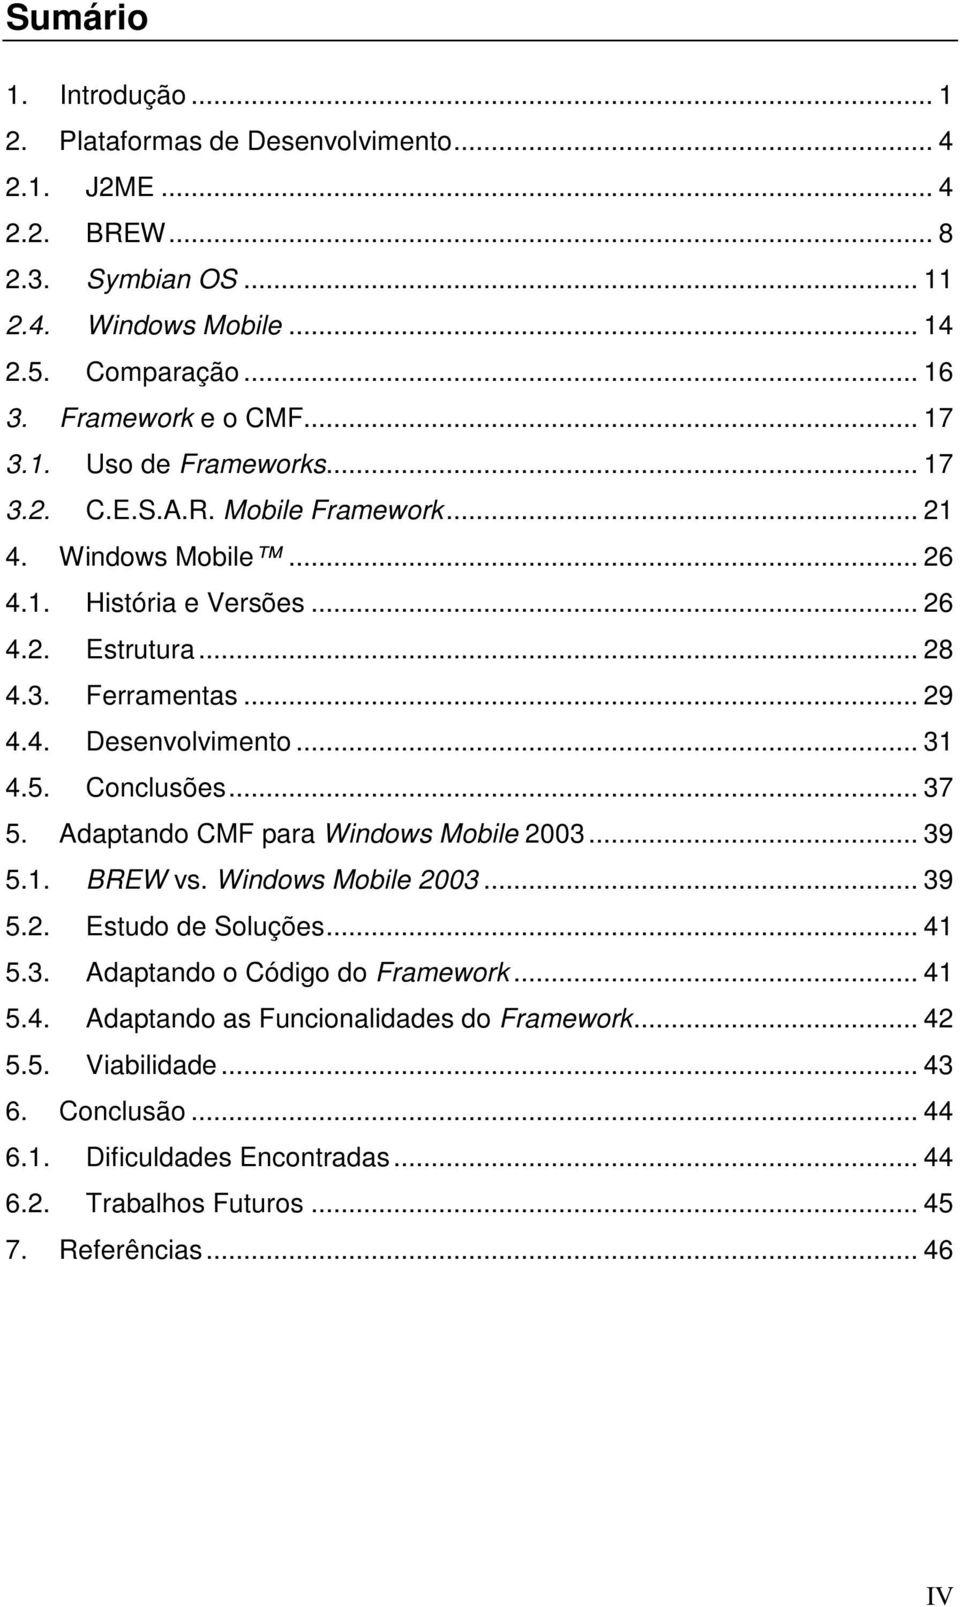 .. 31 4.5. Conclusões... 37 5. Adaptando CMF para Windows Mobile 2003... 39 5.1. BREW vs. Windows Mobile 2003... 39 5.2. Estudo de Soluções... 41 5.3. Adaptando o Código do Framework.